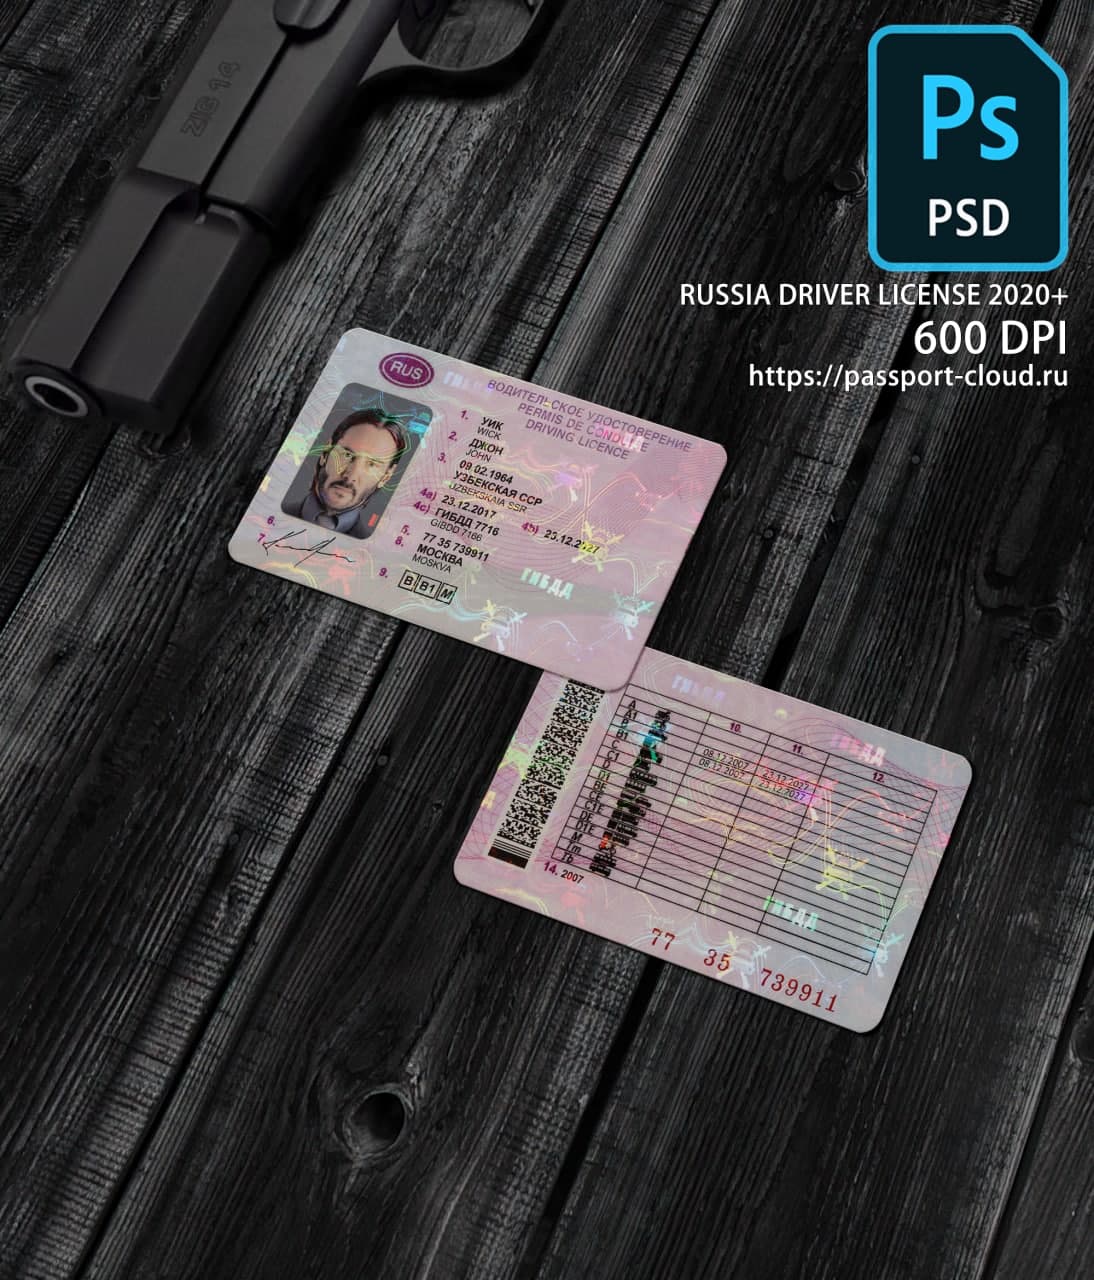 Russia Driver License 2020+ PSD1